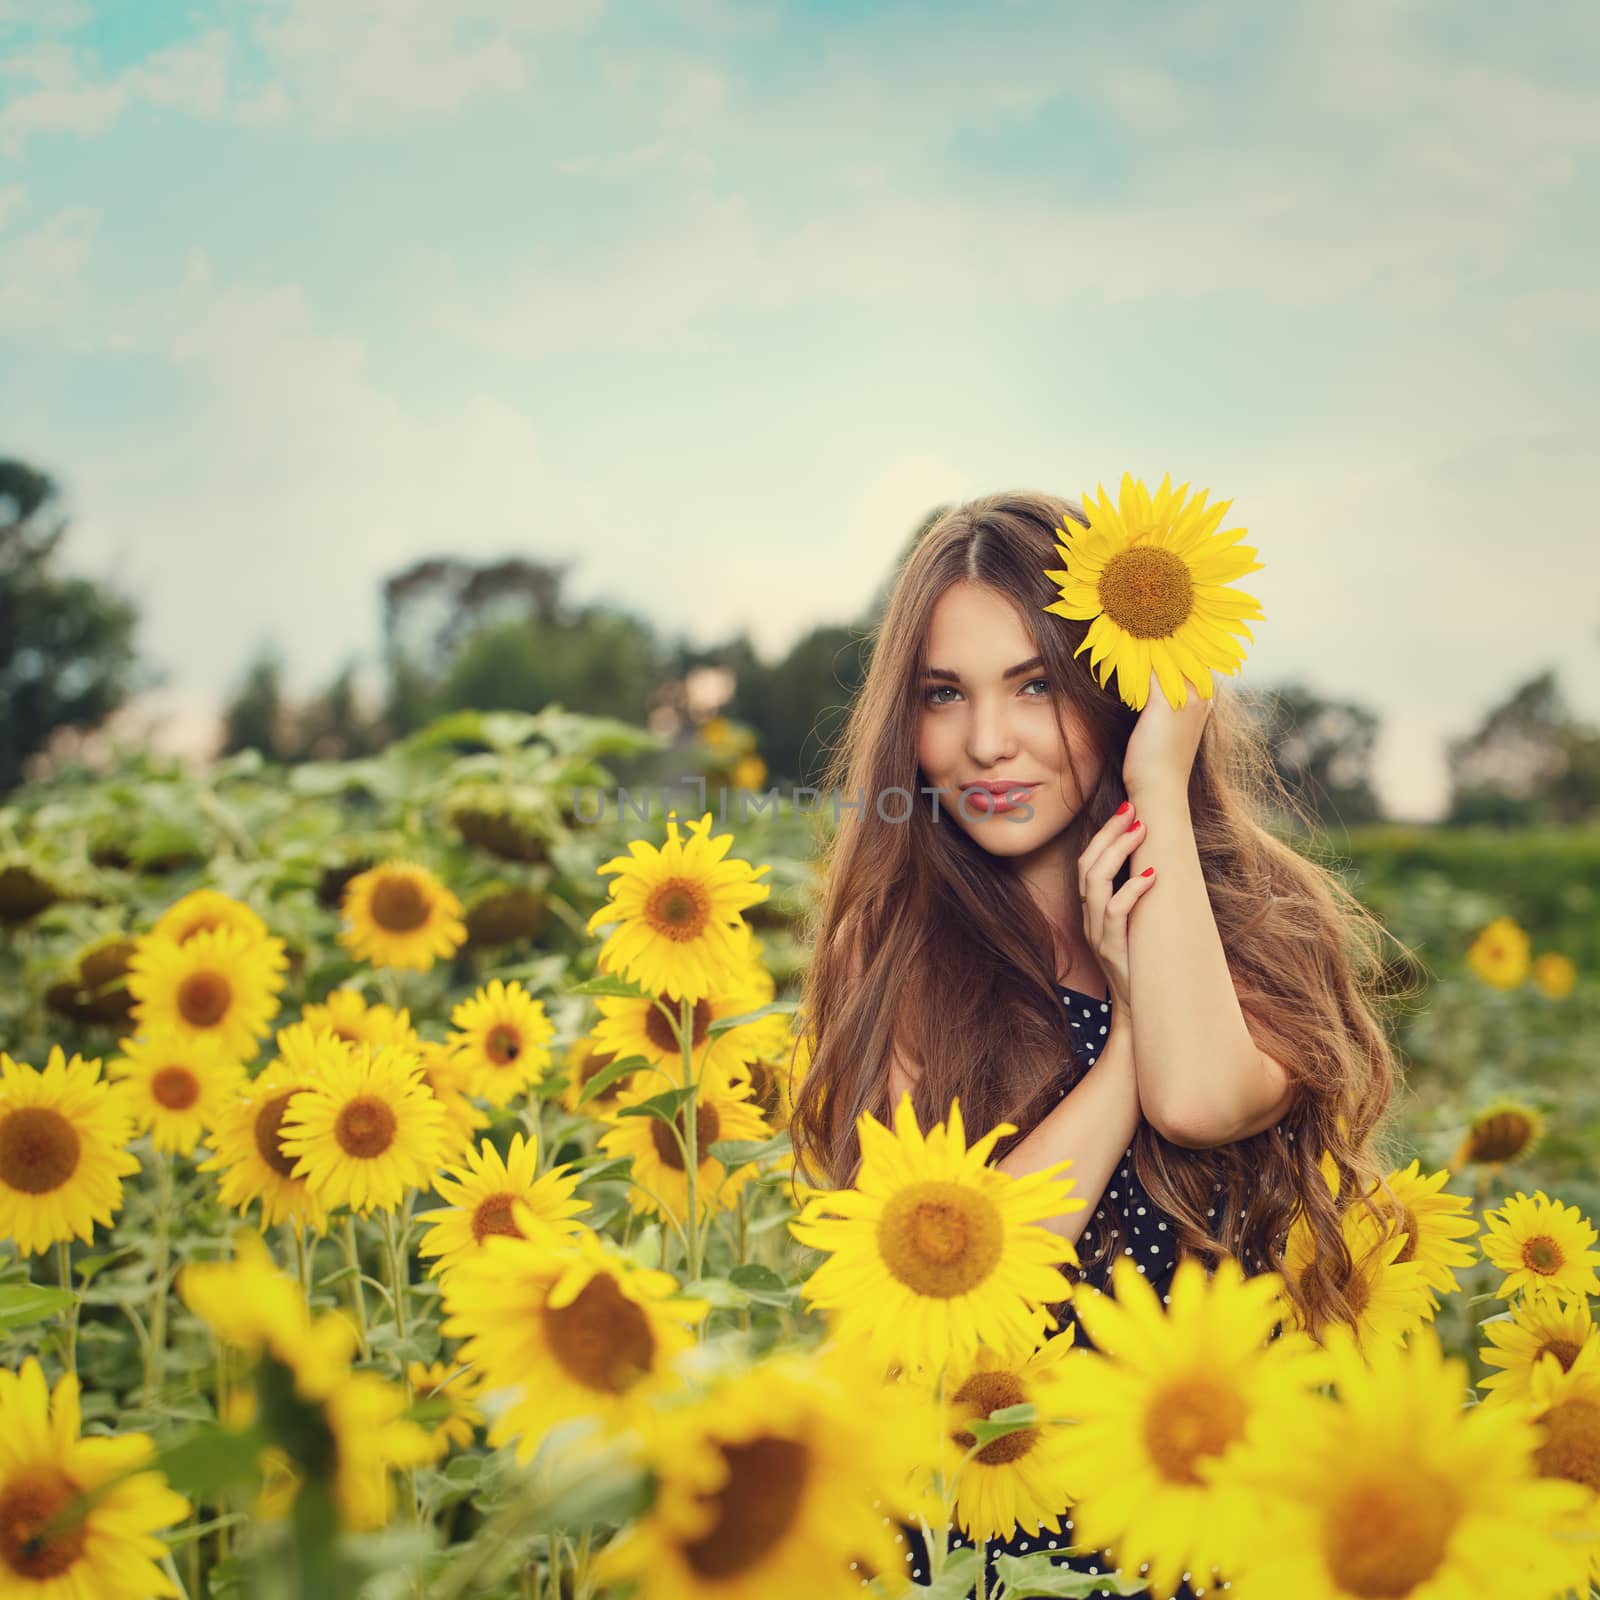 Beautiful girl with sunflowers by rufatjumali